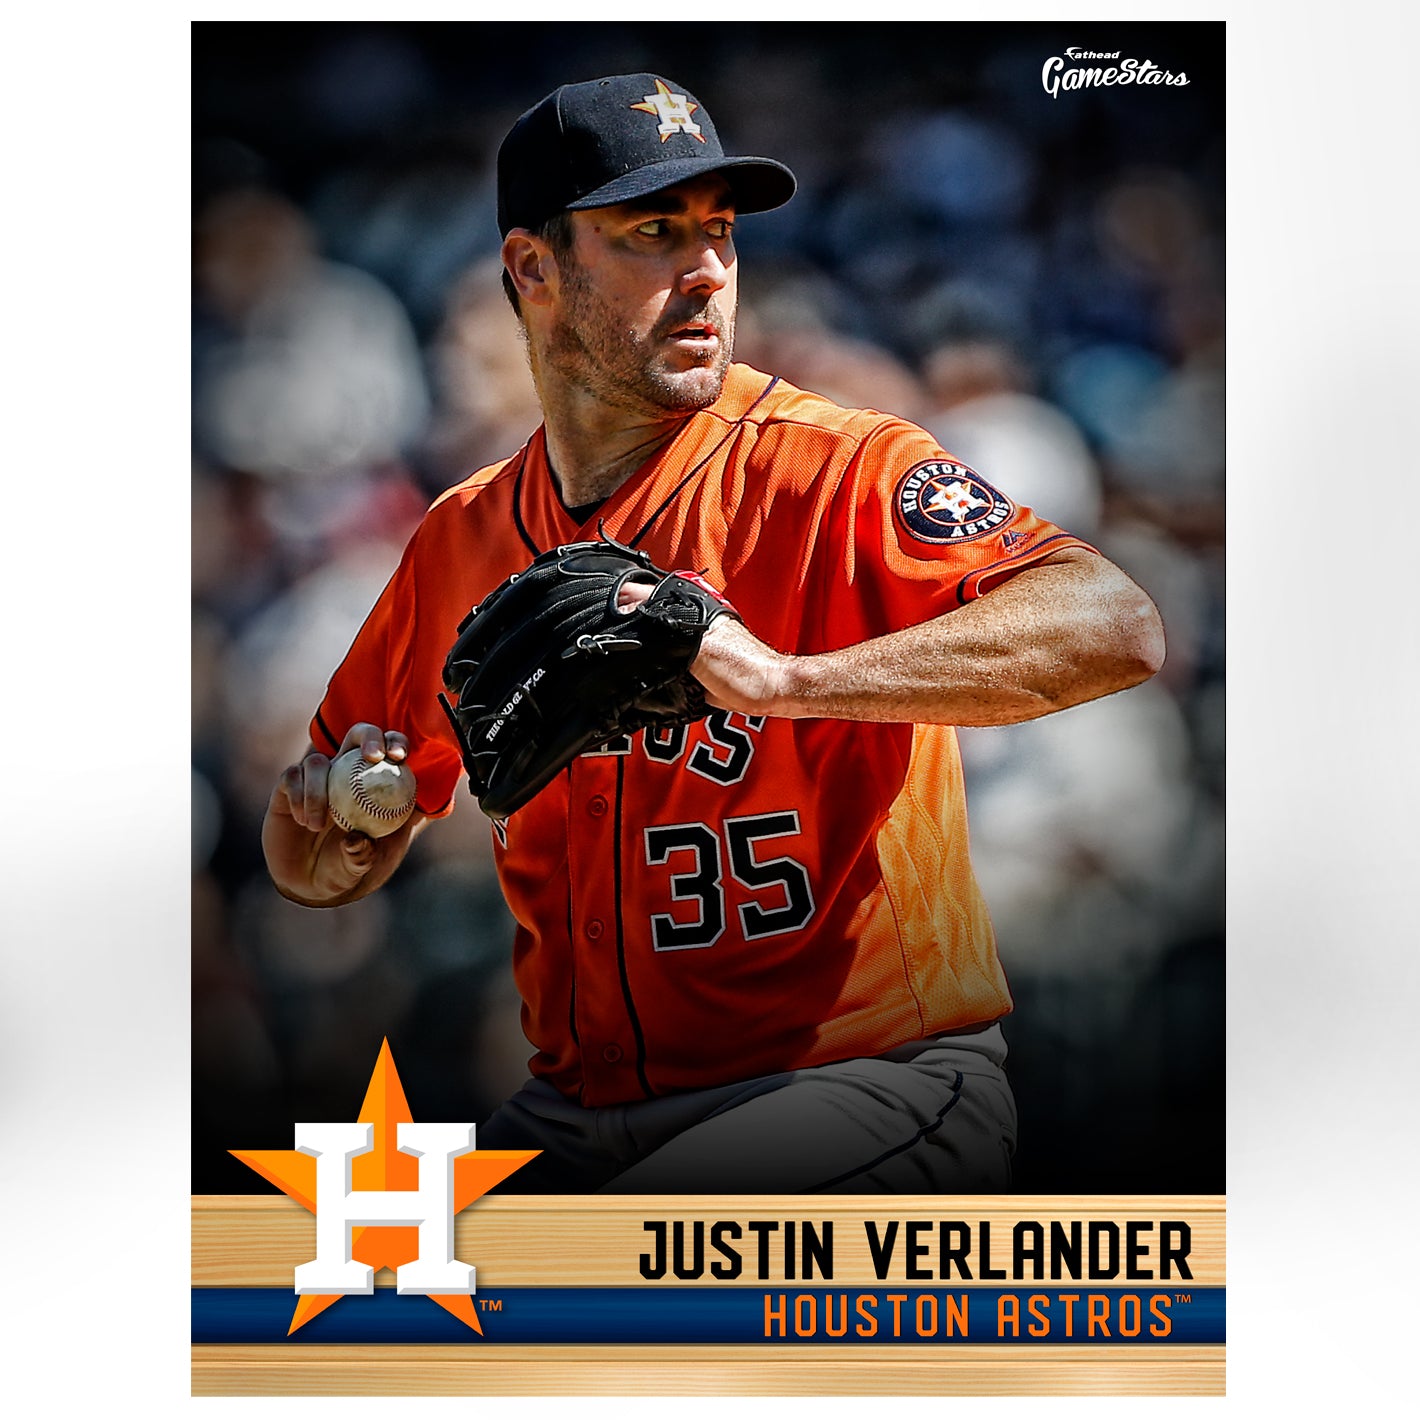 Houston Astros: Justin Verlander 2021 GameStar - Officially Licensed M